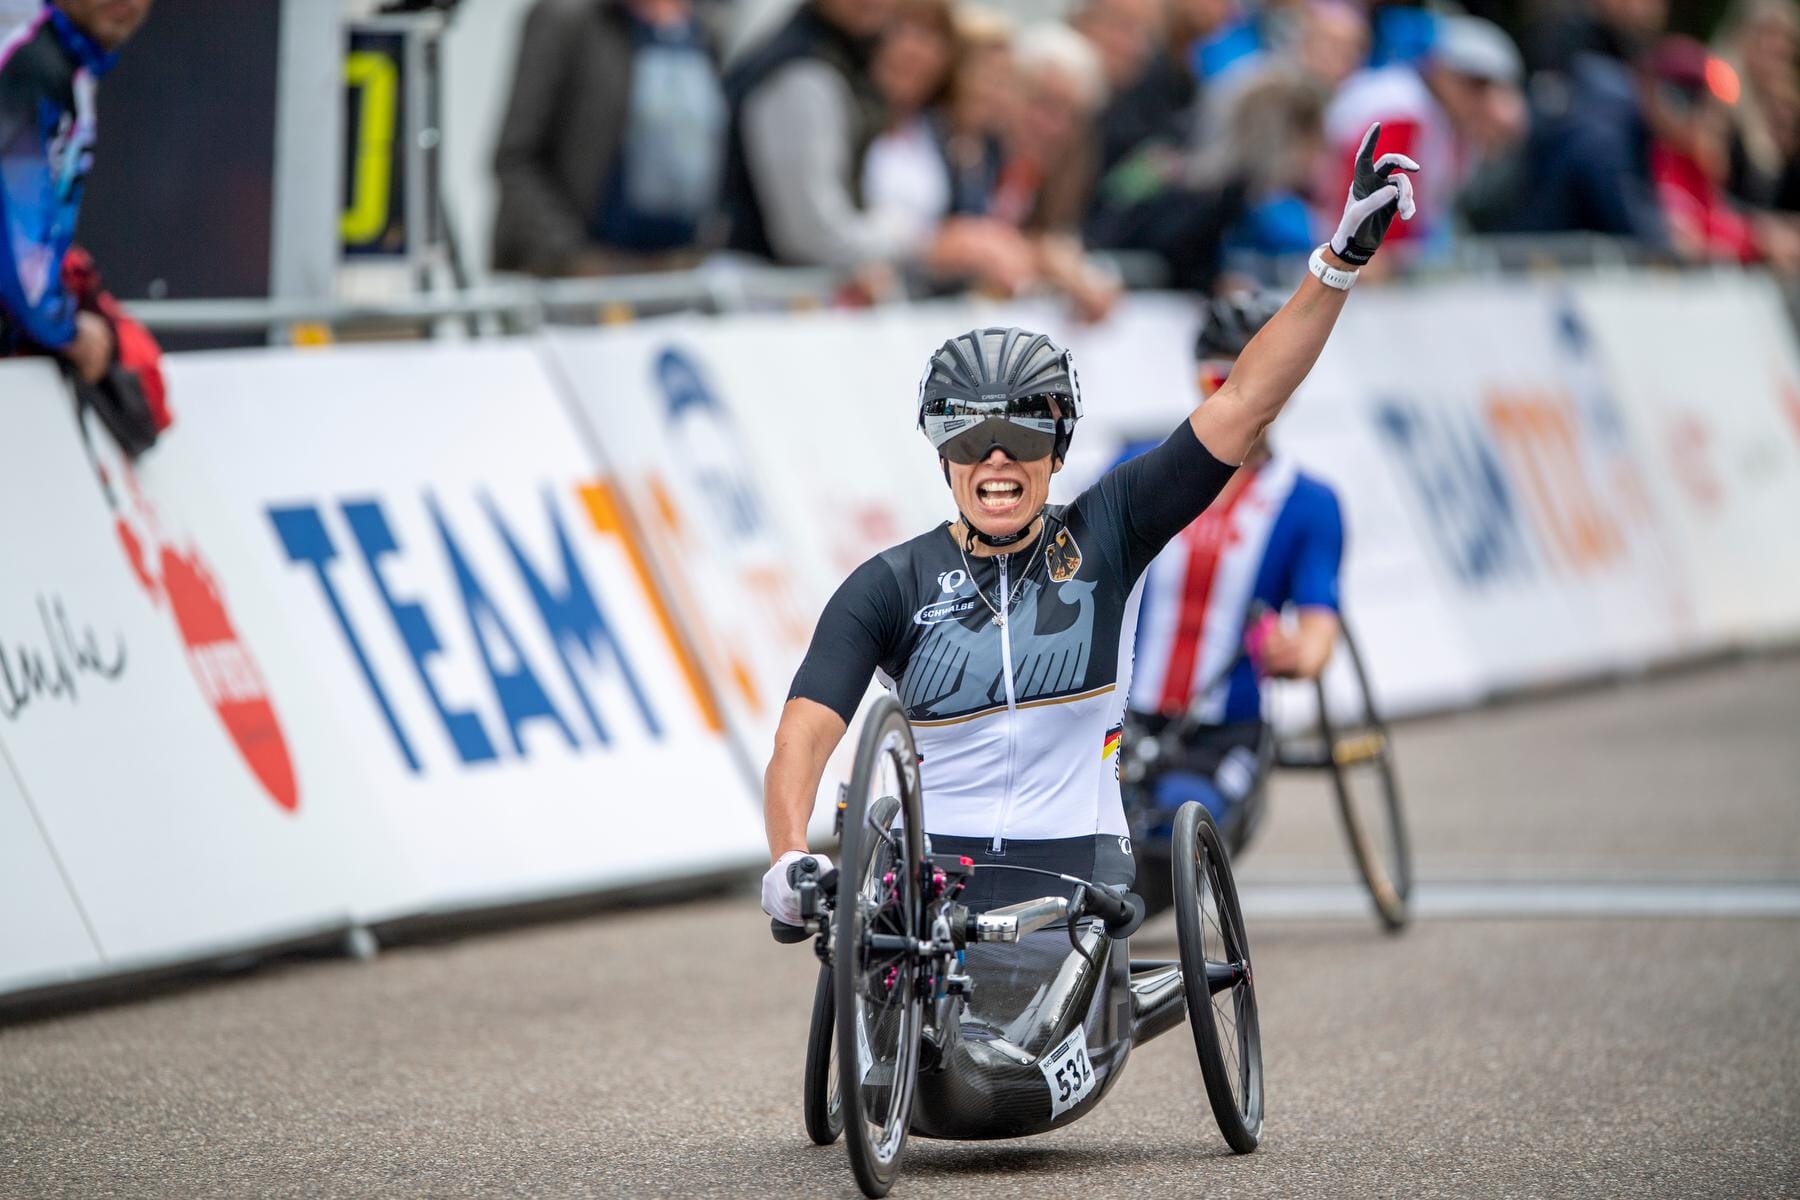 Andrea Eskau: Die Thüringerin ist sowohl bei den Sommerspielen als auch bei den Winter-Paralympics erfolgreich. So gewann die studierte Psychologin Goldmedaillen im Handbike, Langlauf und Biathlon.